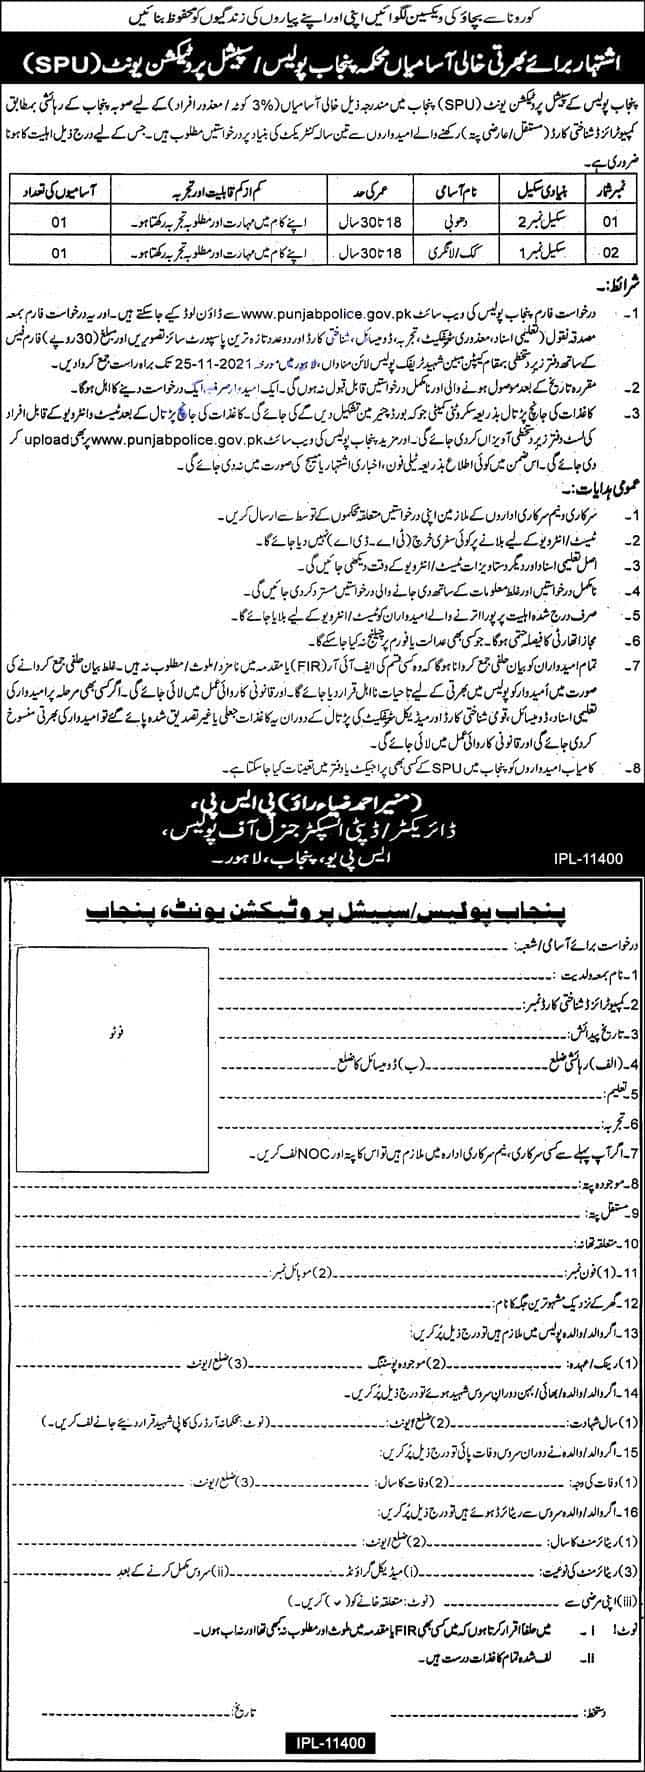 Punjab Police Jobs 2021 – Download Application Form via www.punjabpolice.gov.pk